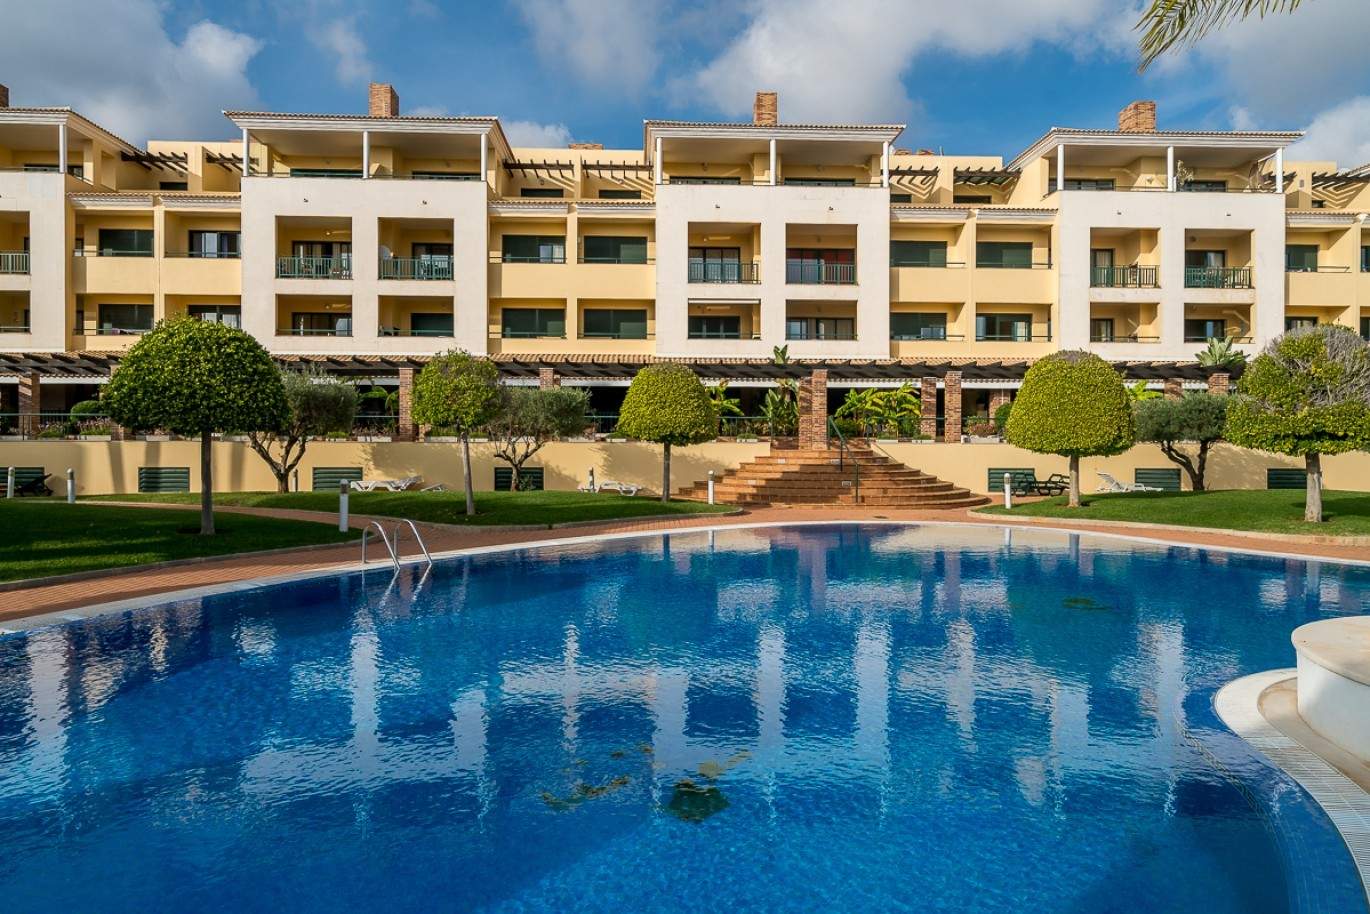 Venda de apartamento com piscina em Vilamoura, Algarve, Portugal_87869